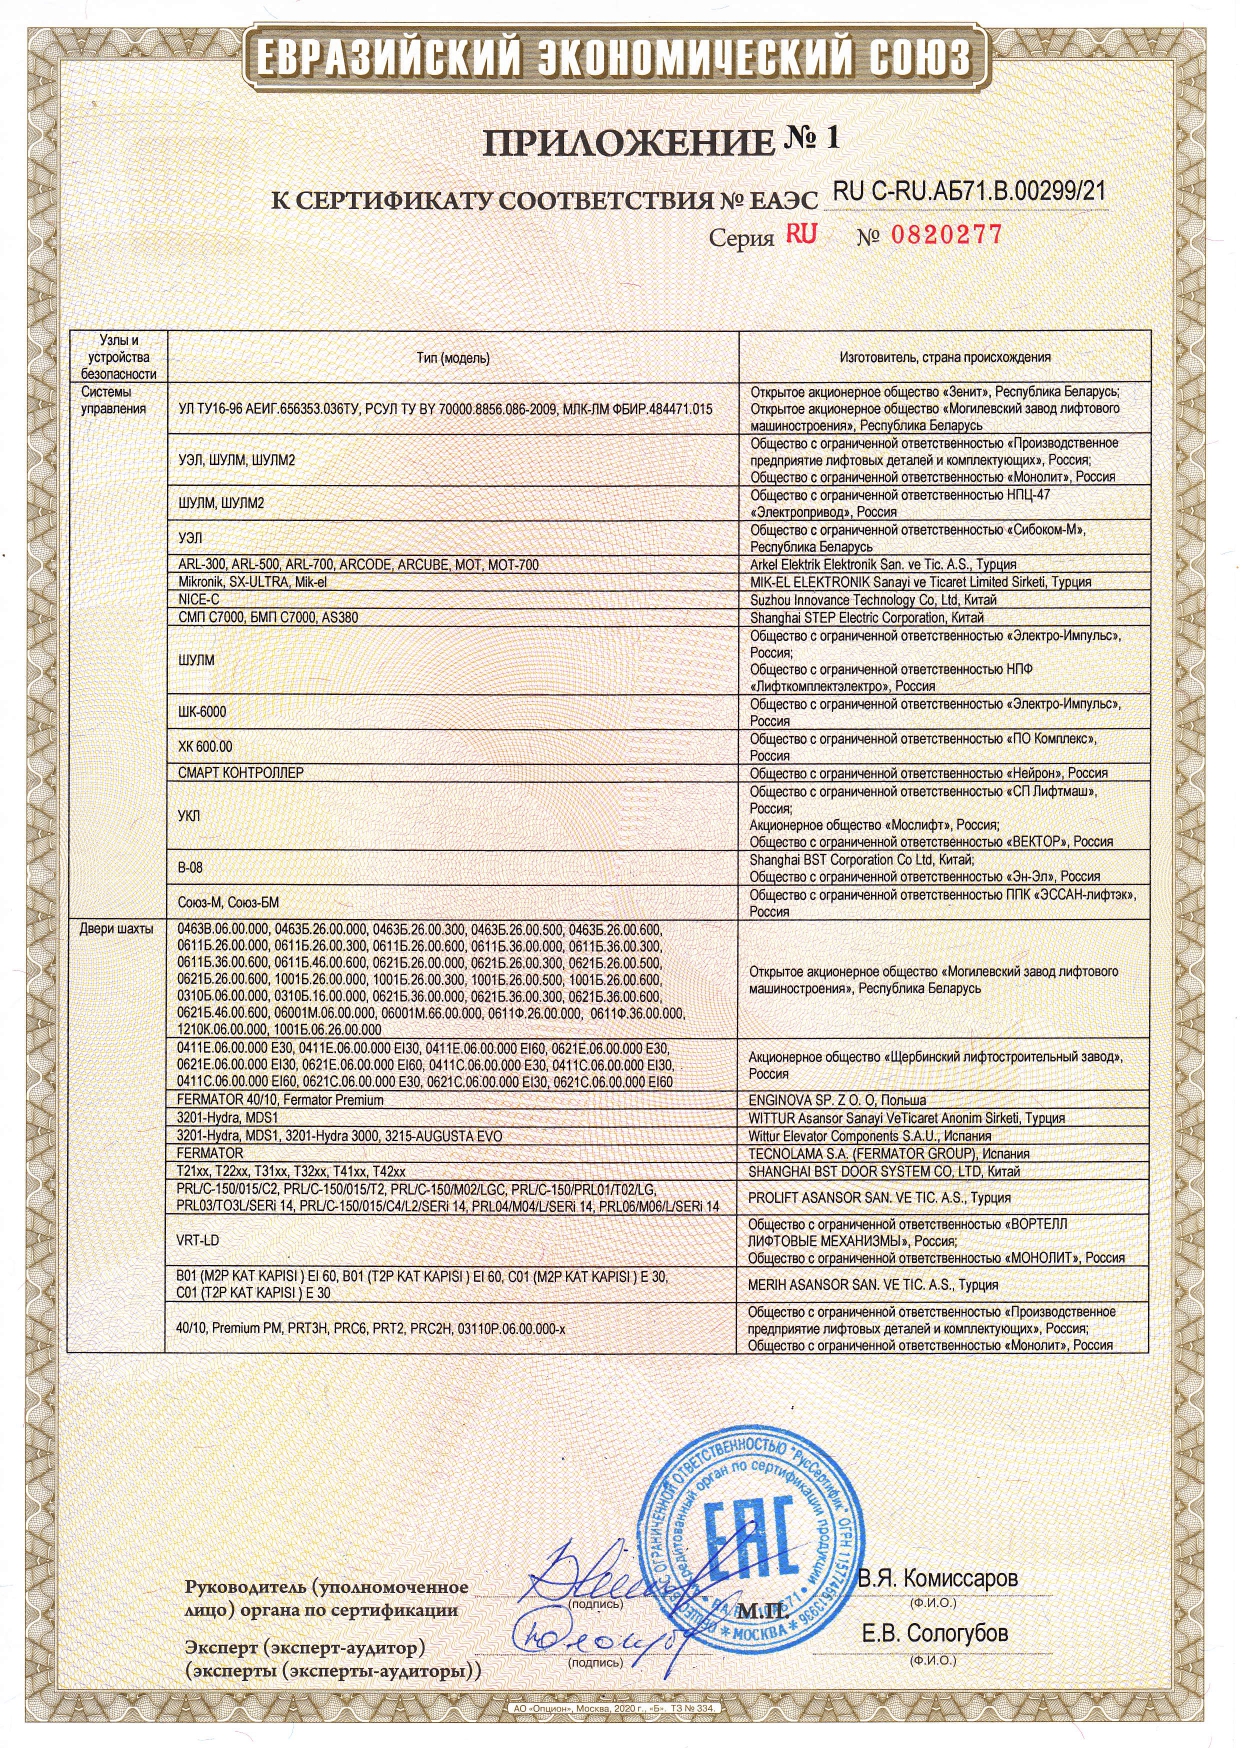 Приложение №1 к сертификату соответствия № RU C-RU.АБ71.В.00299/21